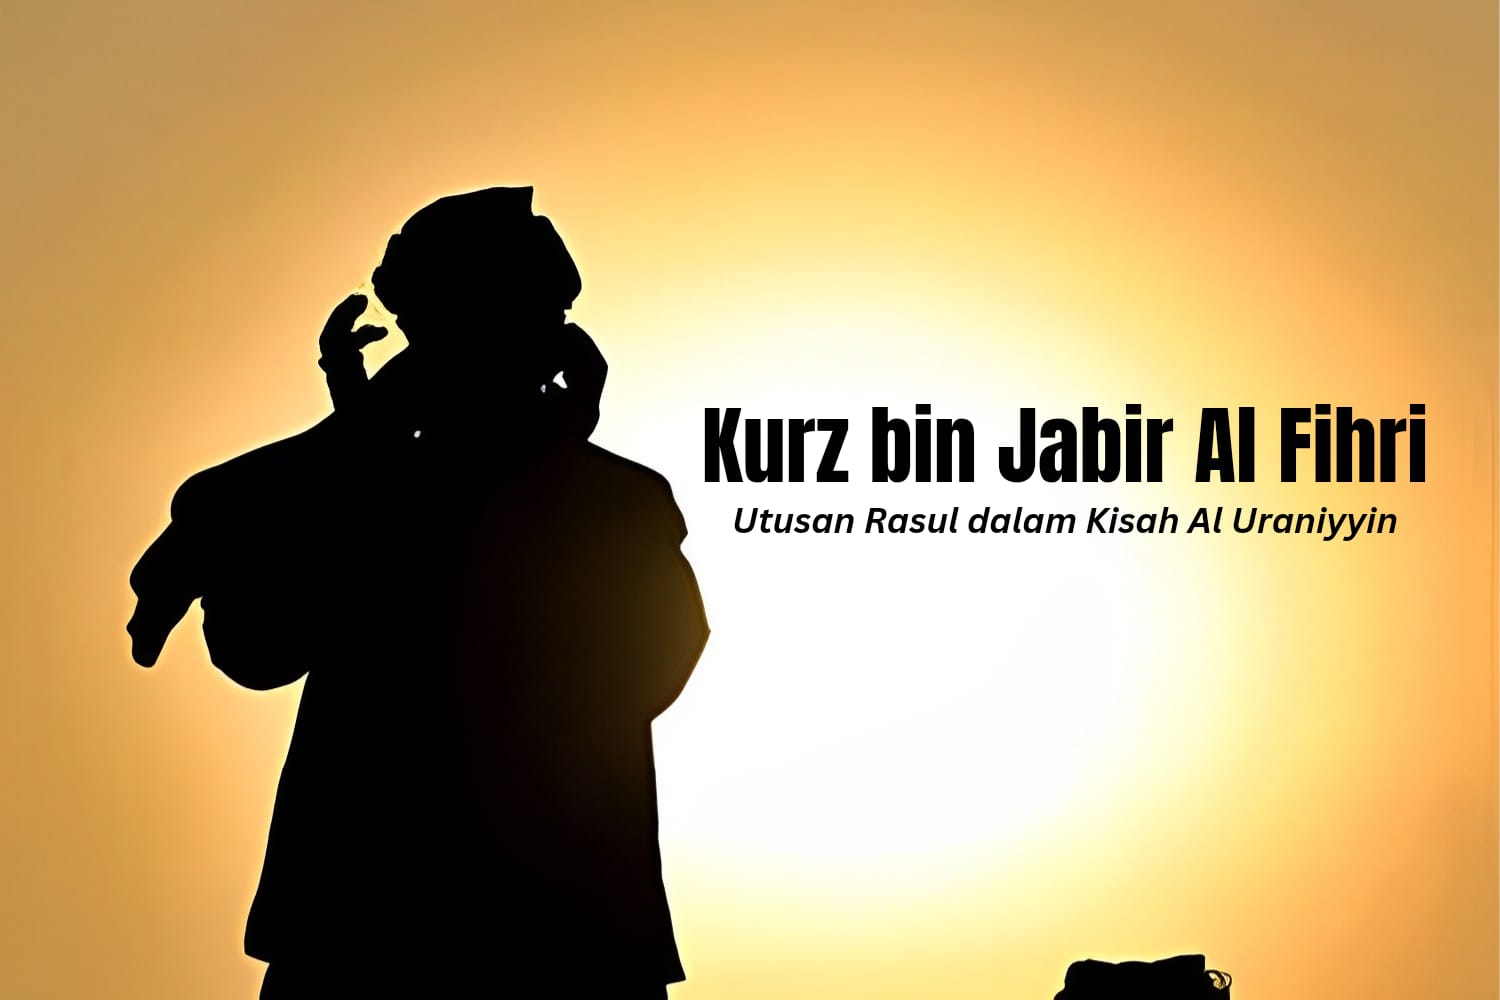 Sahabat Nabi Kurz bin Jabir Al Fihri, Utusan Rasul dalam Kisah Al Uraniyyin